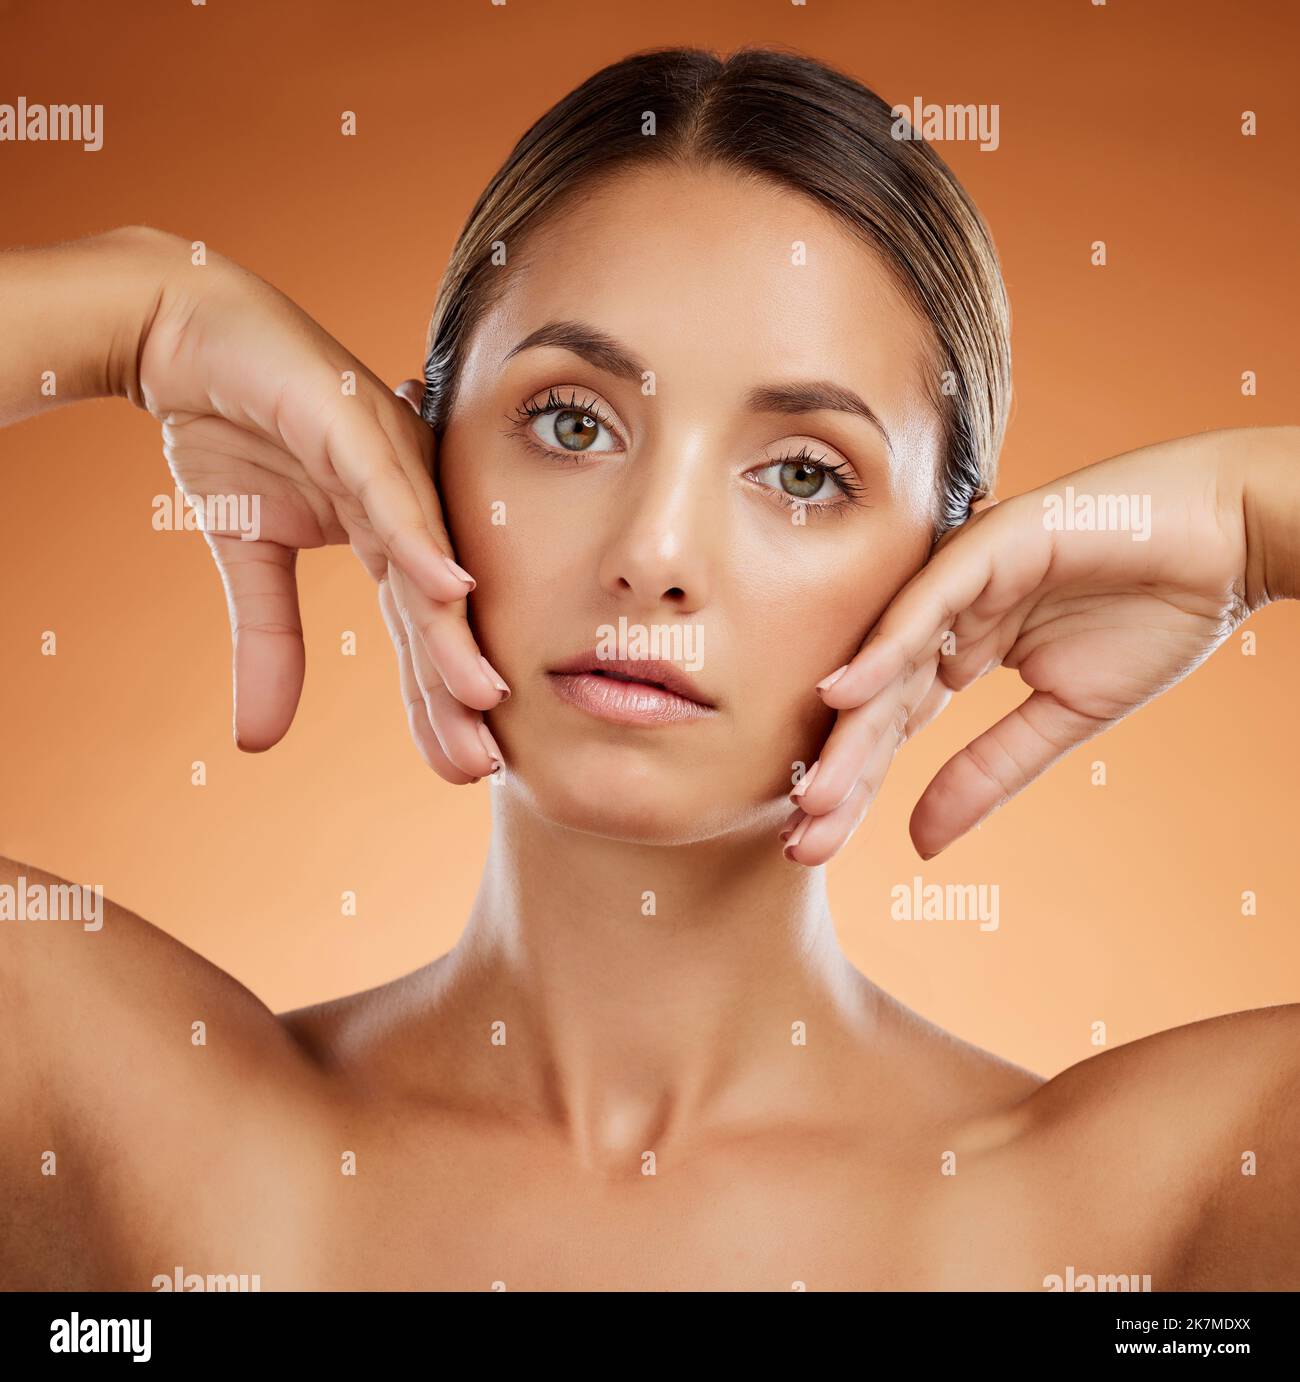 Hautpflege, Schönheit und Frau mit Glanz im Gesicht vor einem orangen Studiohintergrund. Porträt eines jungen, gesunden und kosmetischen Modells mit Körperschminke Stockfoto